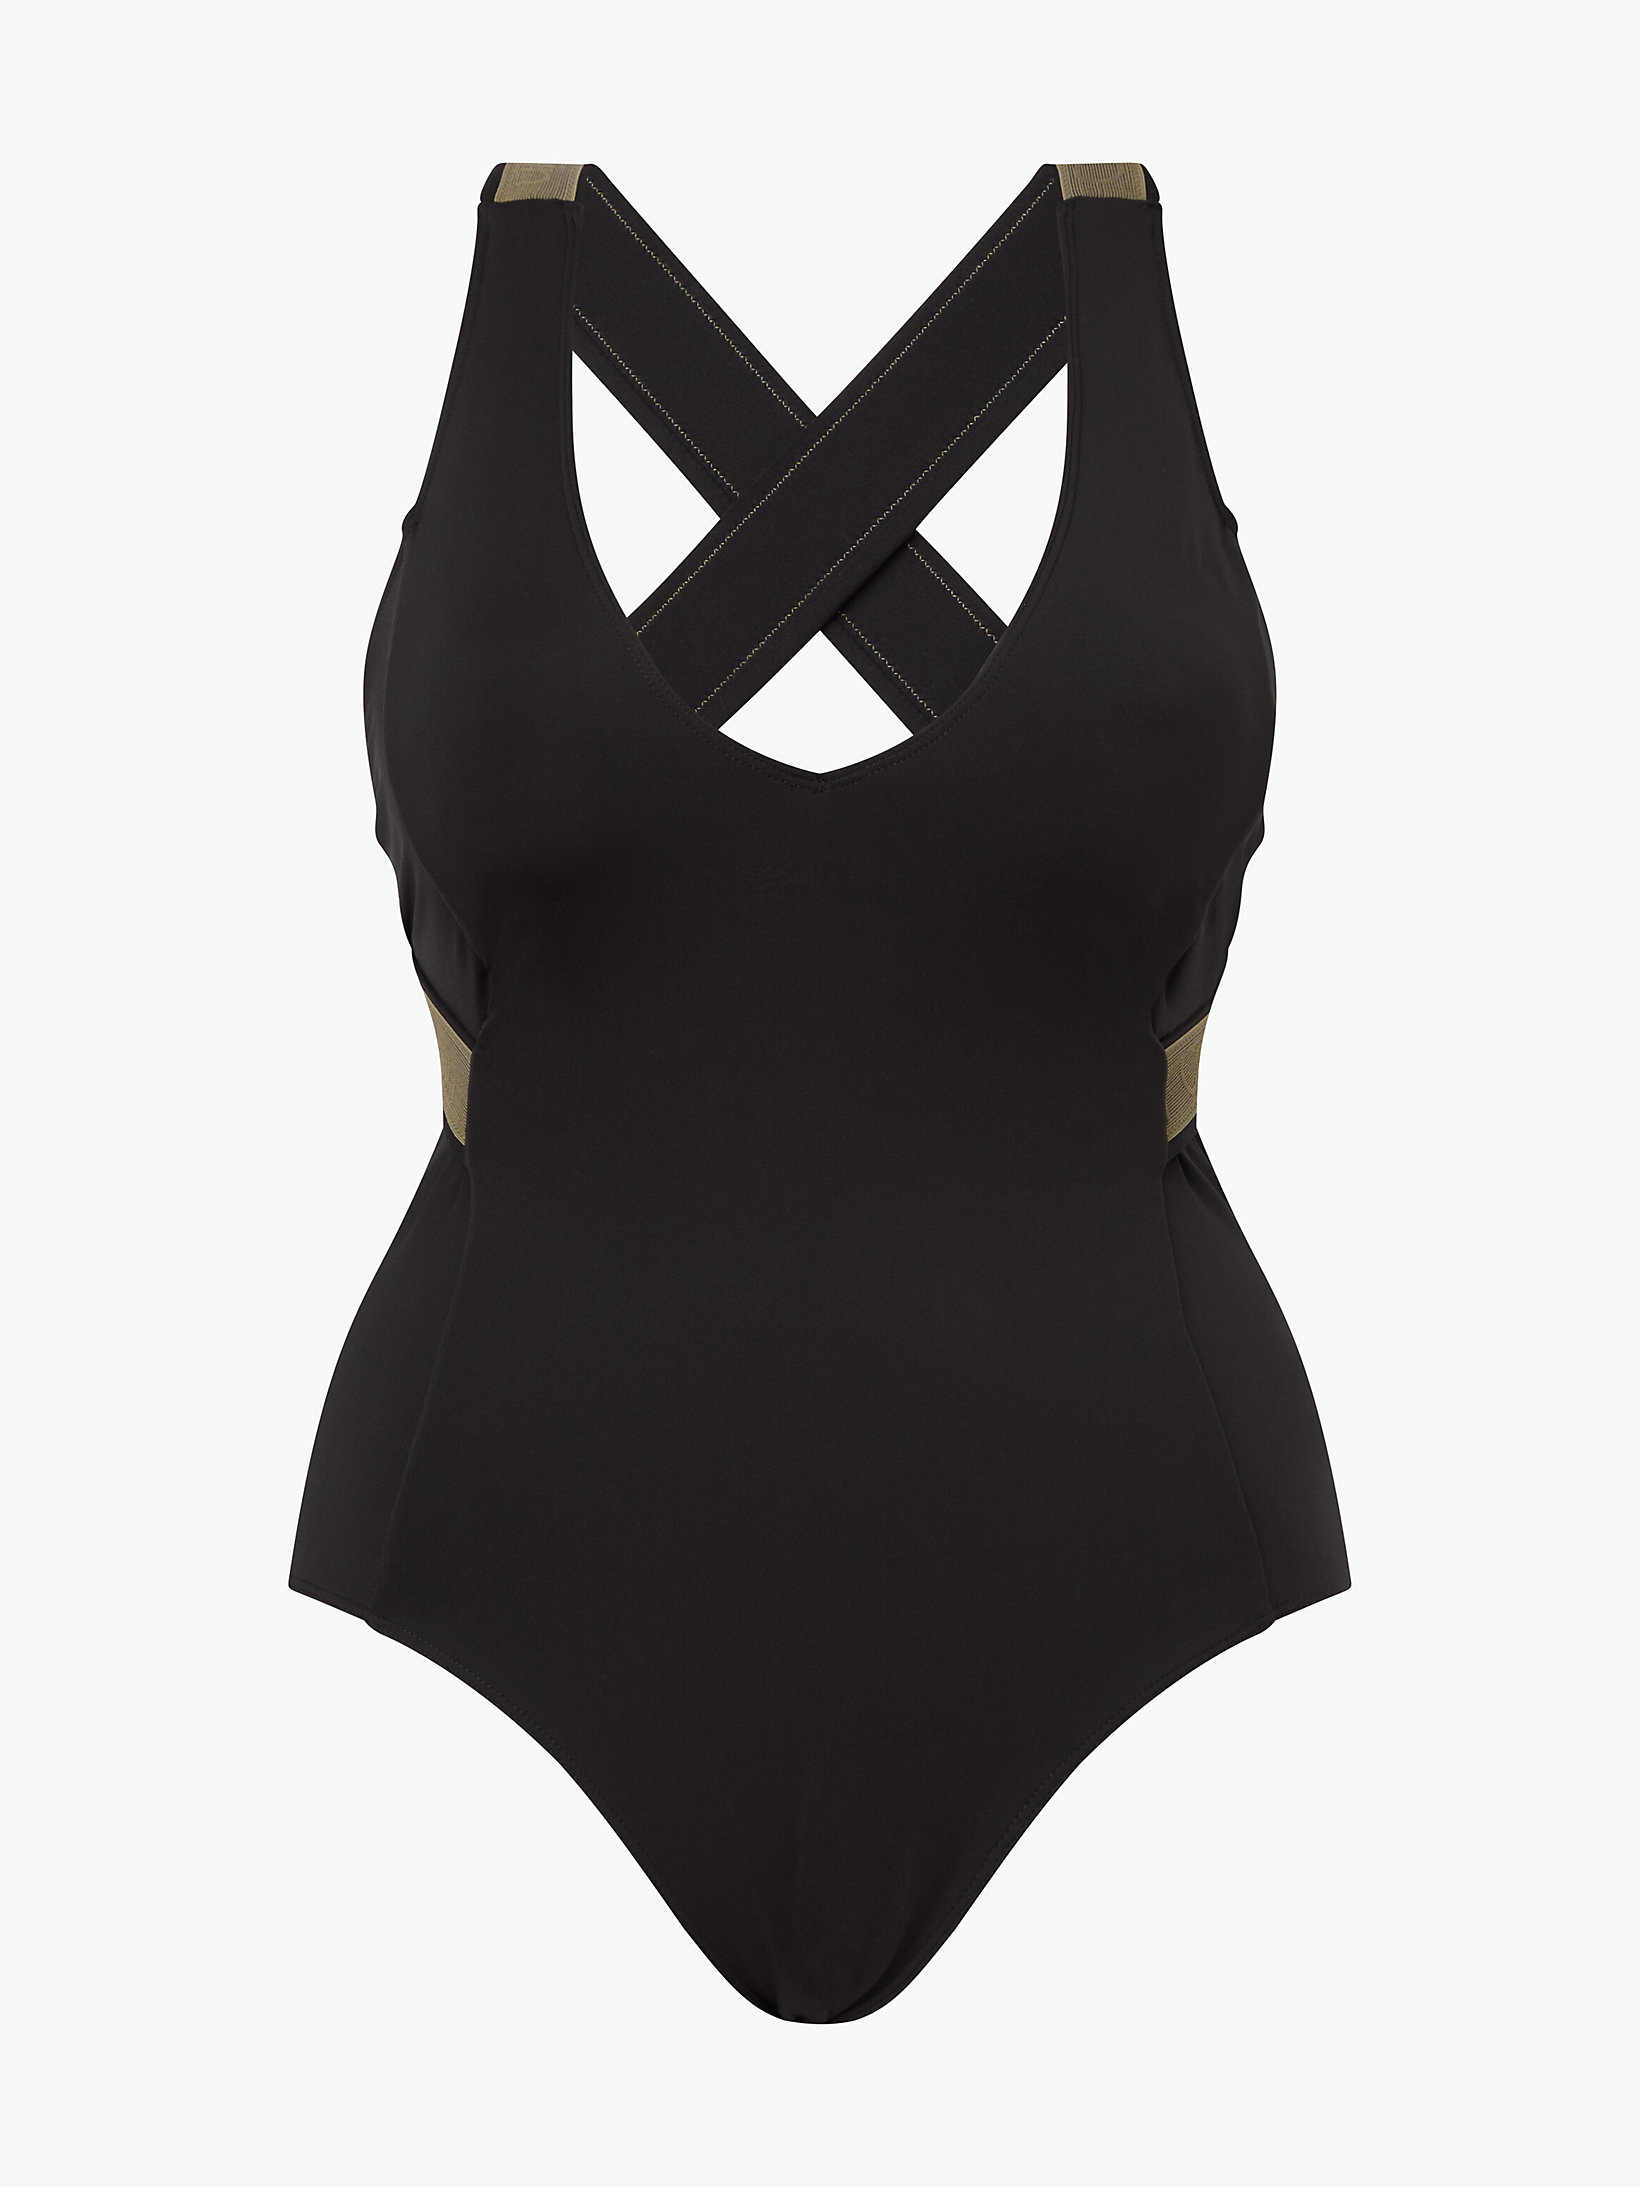 Pvh Black Plus Size Swimsuit - CK Curve undefined women Calvin Klein